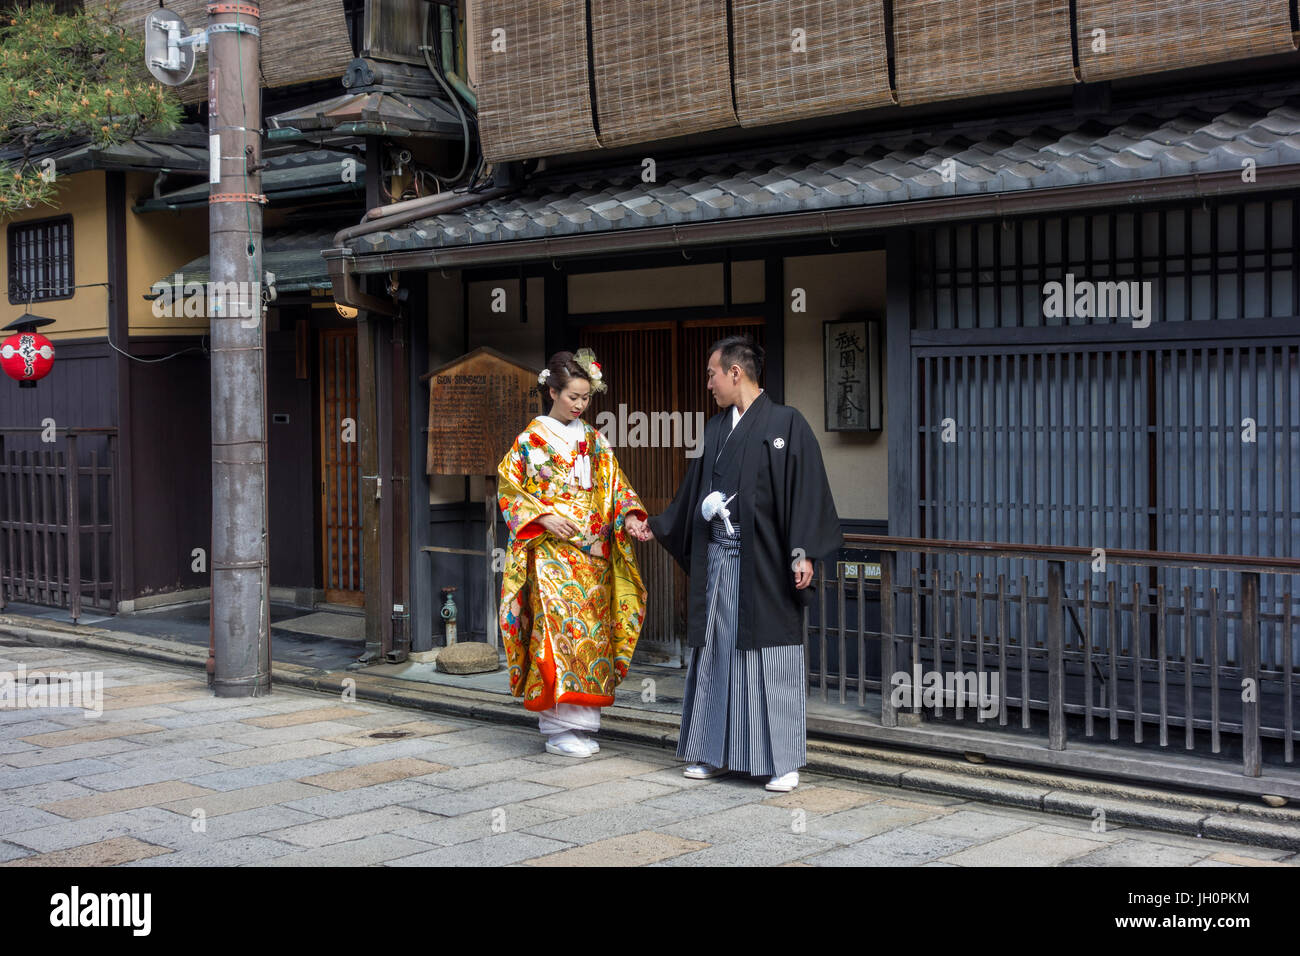 Coppia giapponese in costume tradizionale, aventi le loro fotografie scattate a pochi giorni prima delle nozze reali. Foto Stock